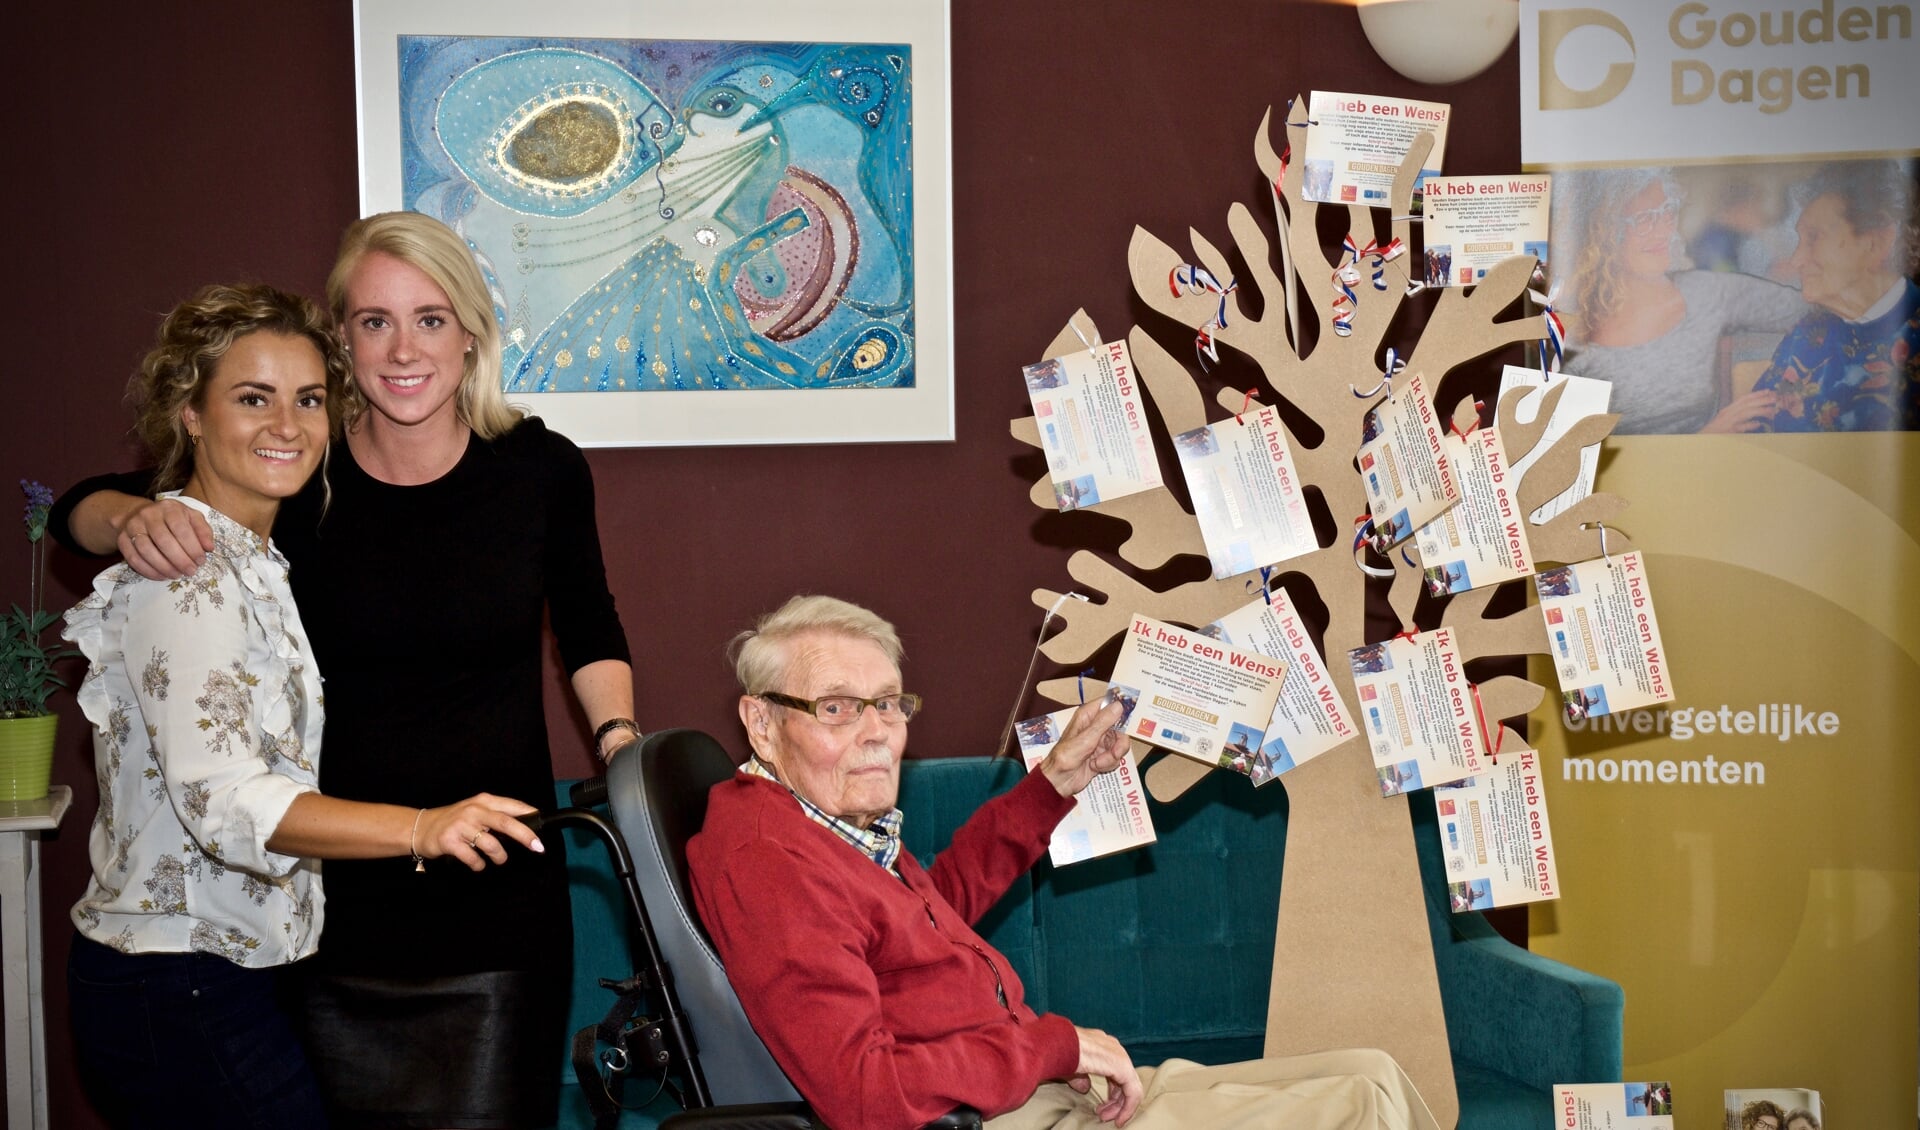 Stephanie en Jette met één van de bewoners van De Loet bij de wensboom, de 96-jarige heer Bram Jansen.